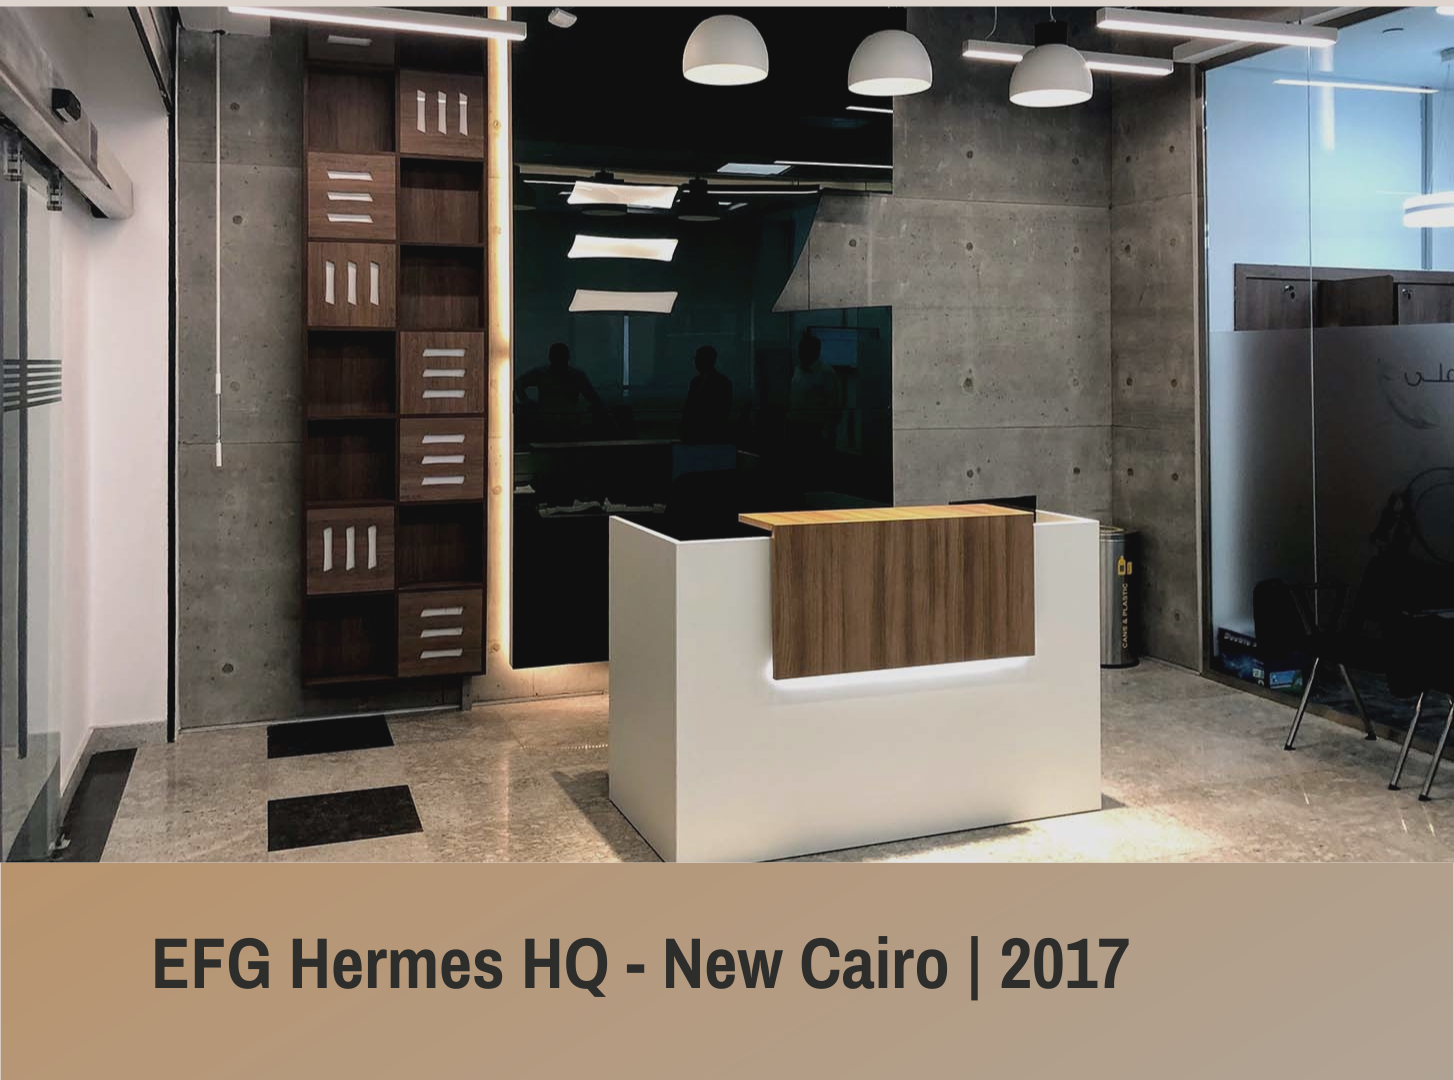 EFG Hermes HQ